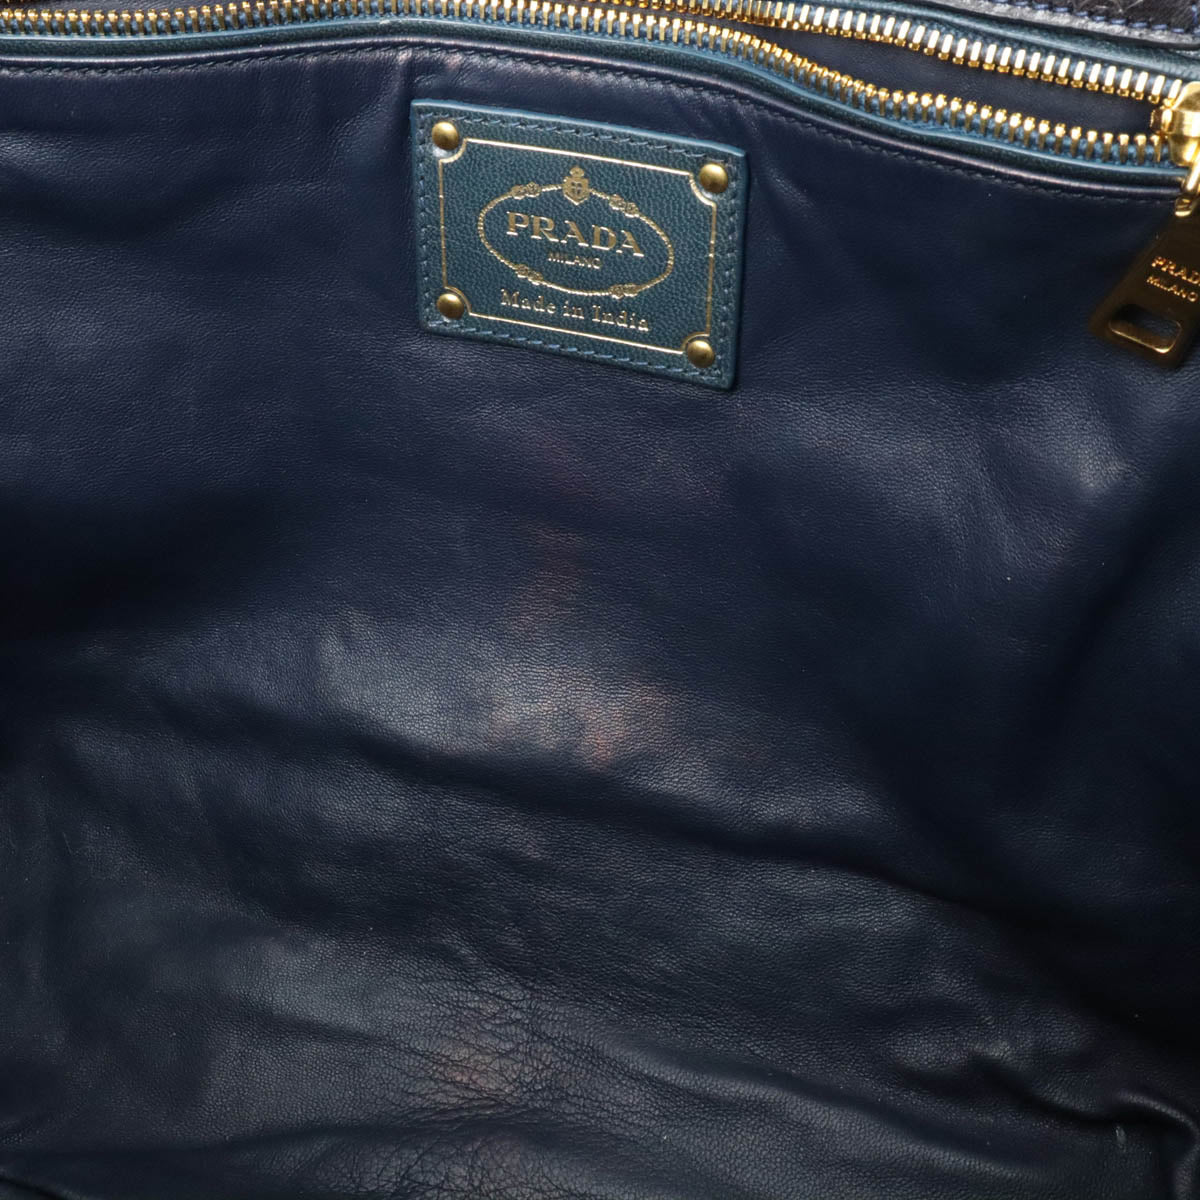 PRADA PRADA MADRAS MADRAS Handbag 2WAY Shoulder Bag Leather COBALTO BLUE Overseas Boutique Purchases BN2584